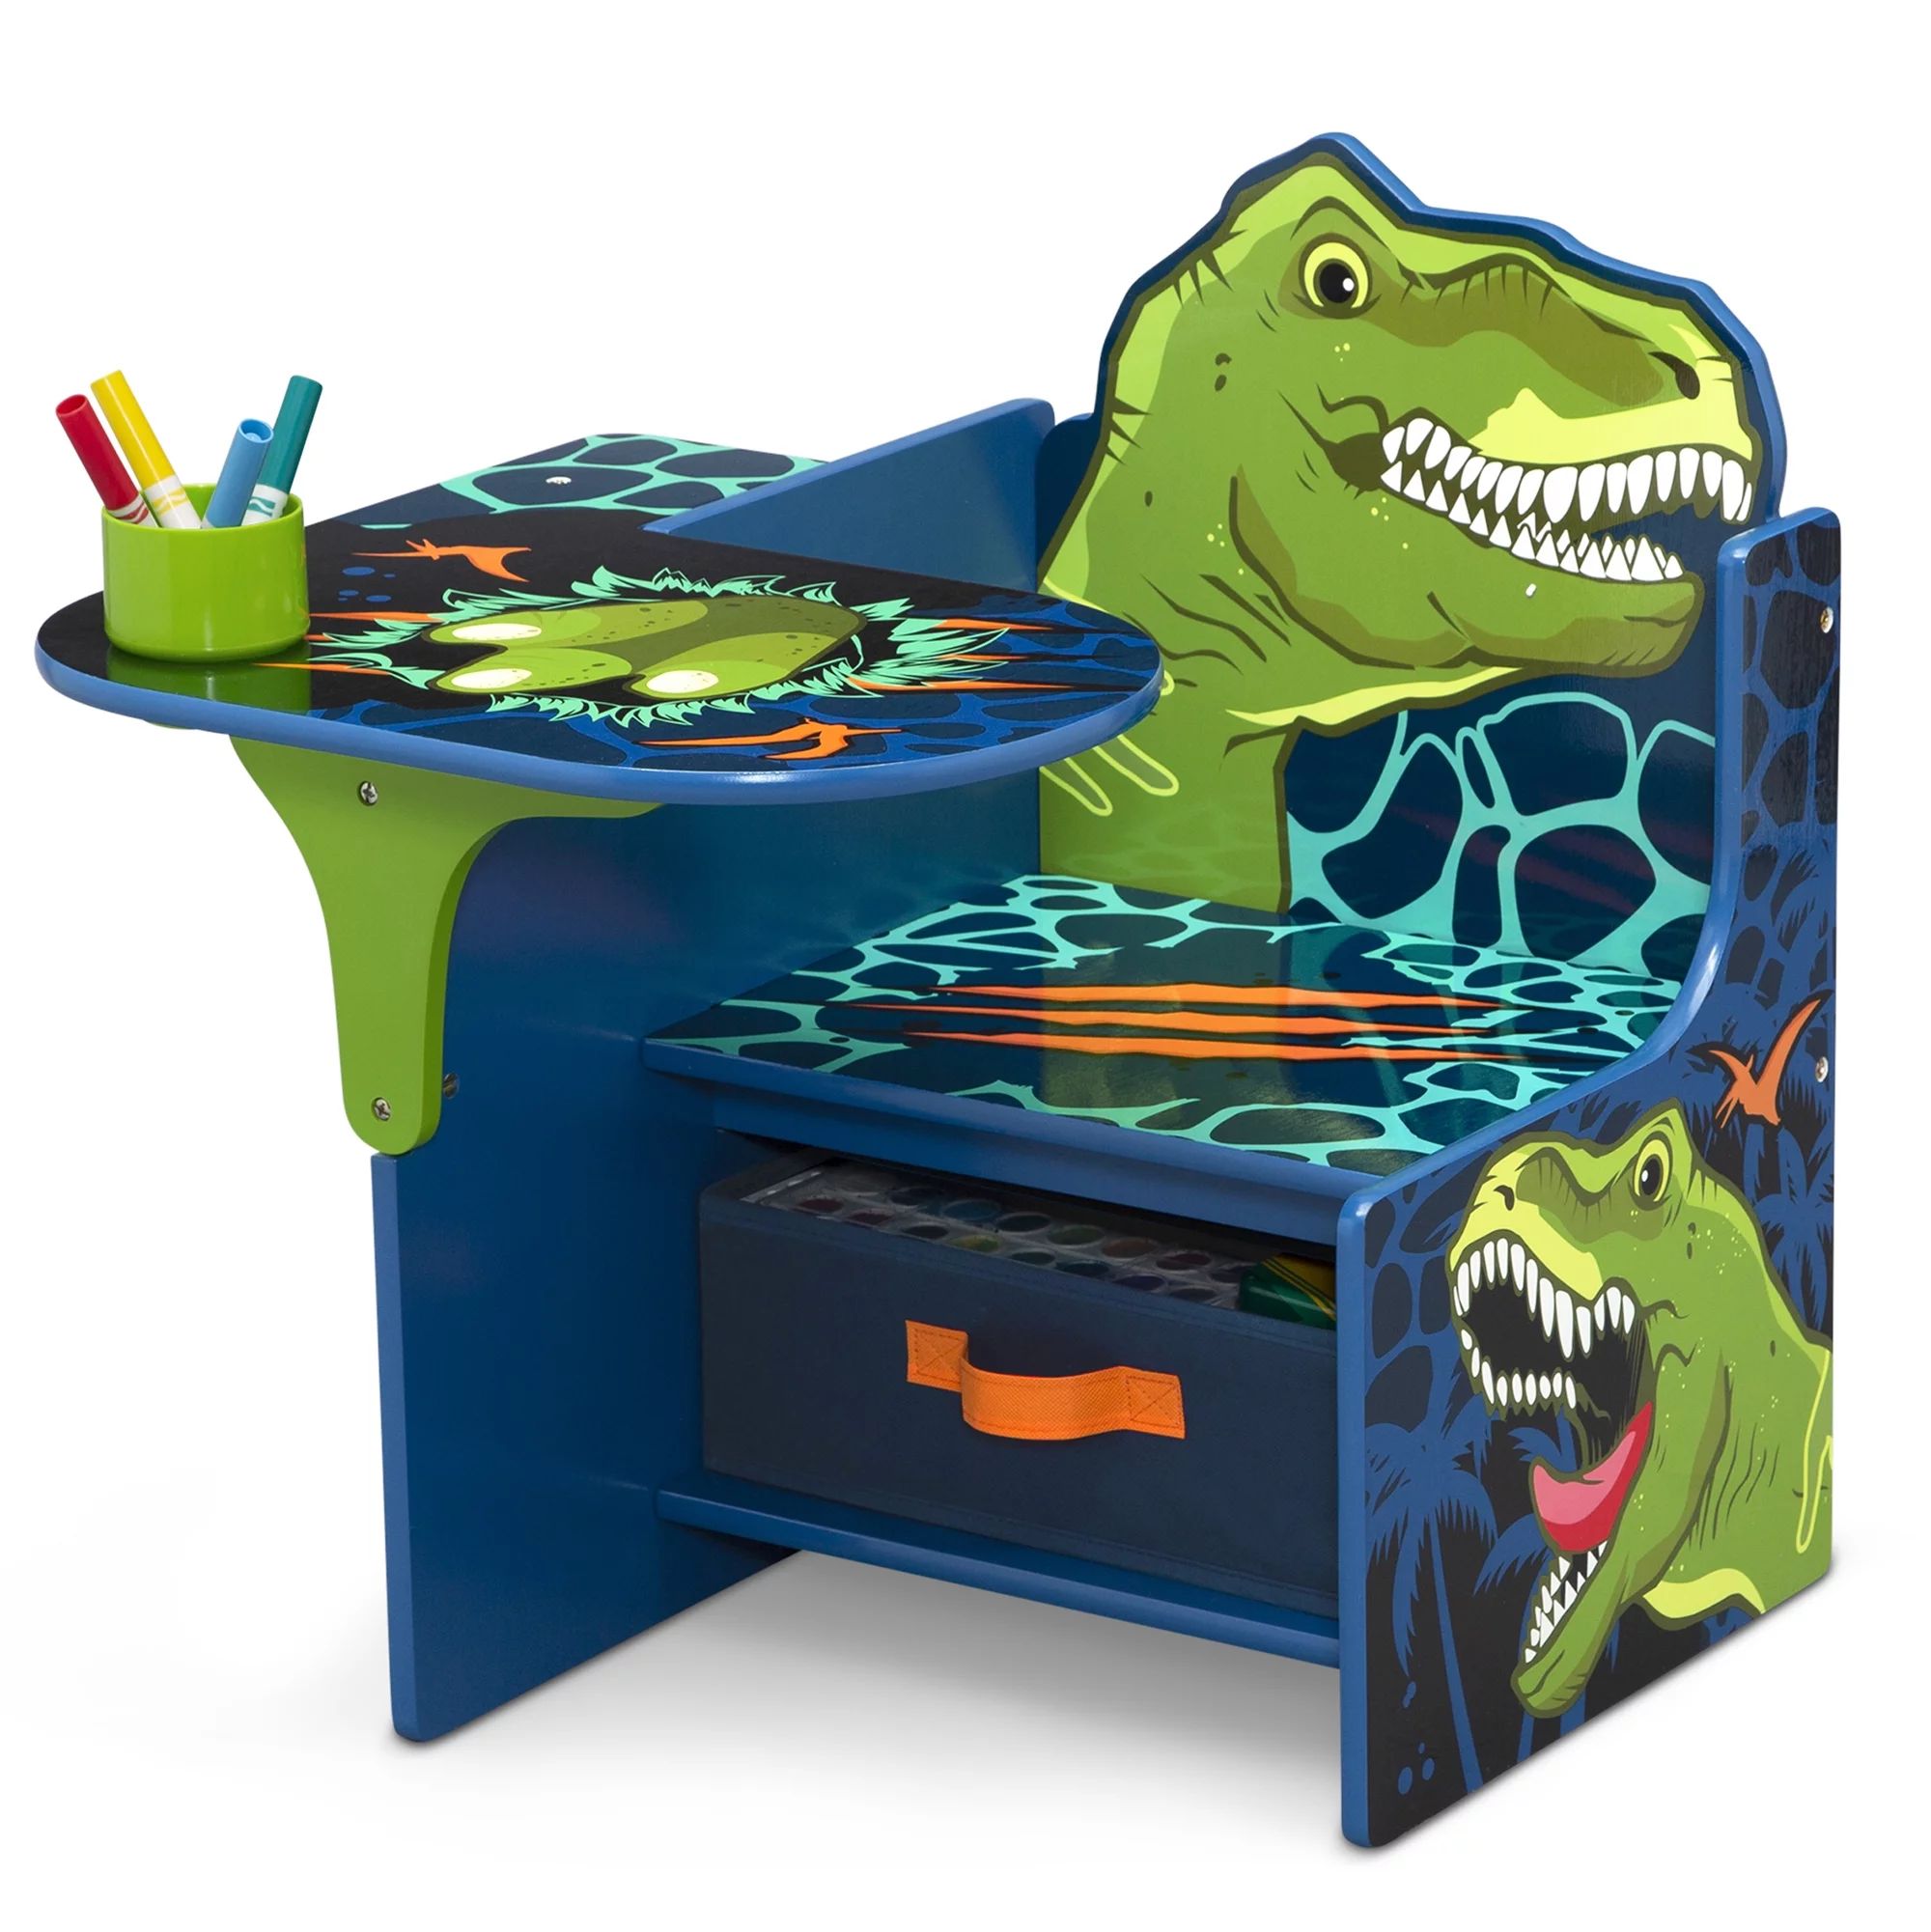 Delta Children Dinosaur Chair Desk with Storage Bin - Greenguard Gold Certified | Walmart (US)